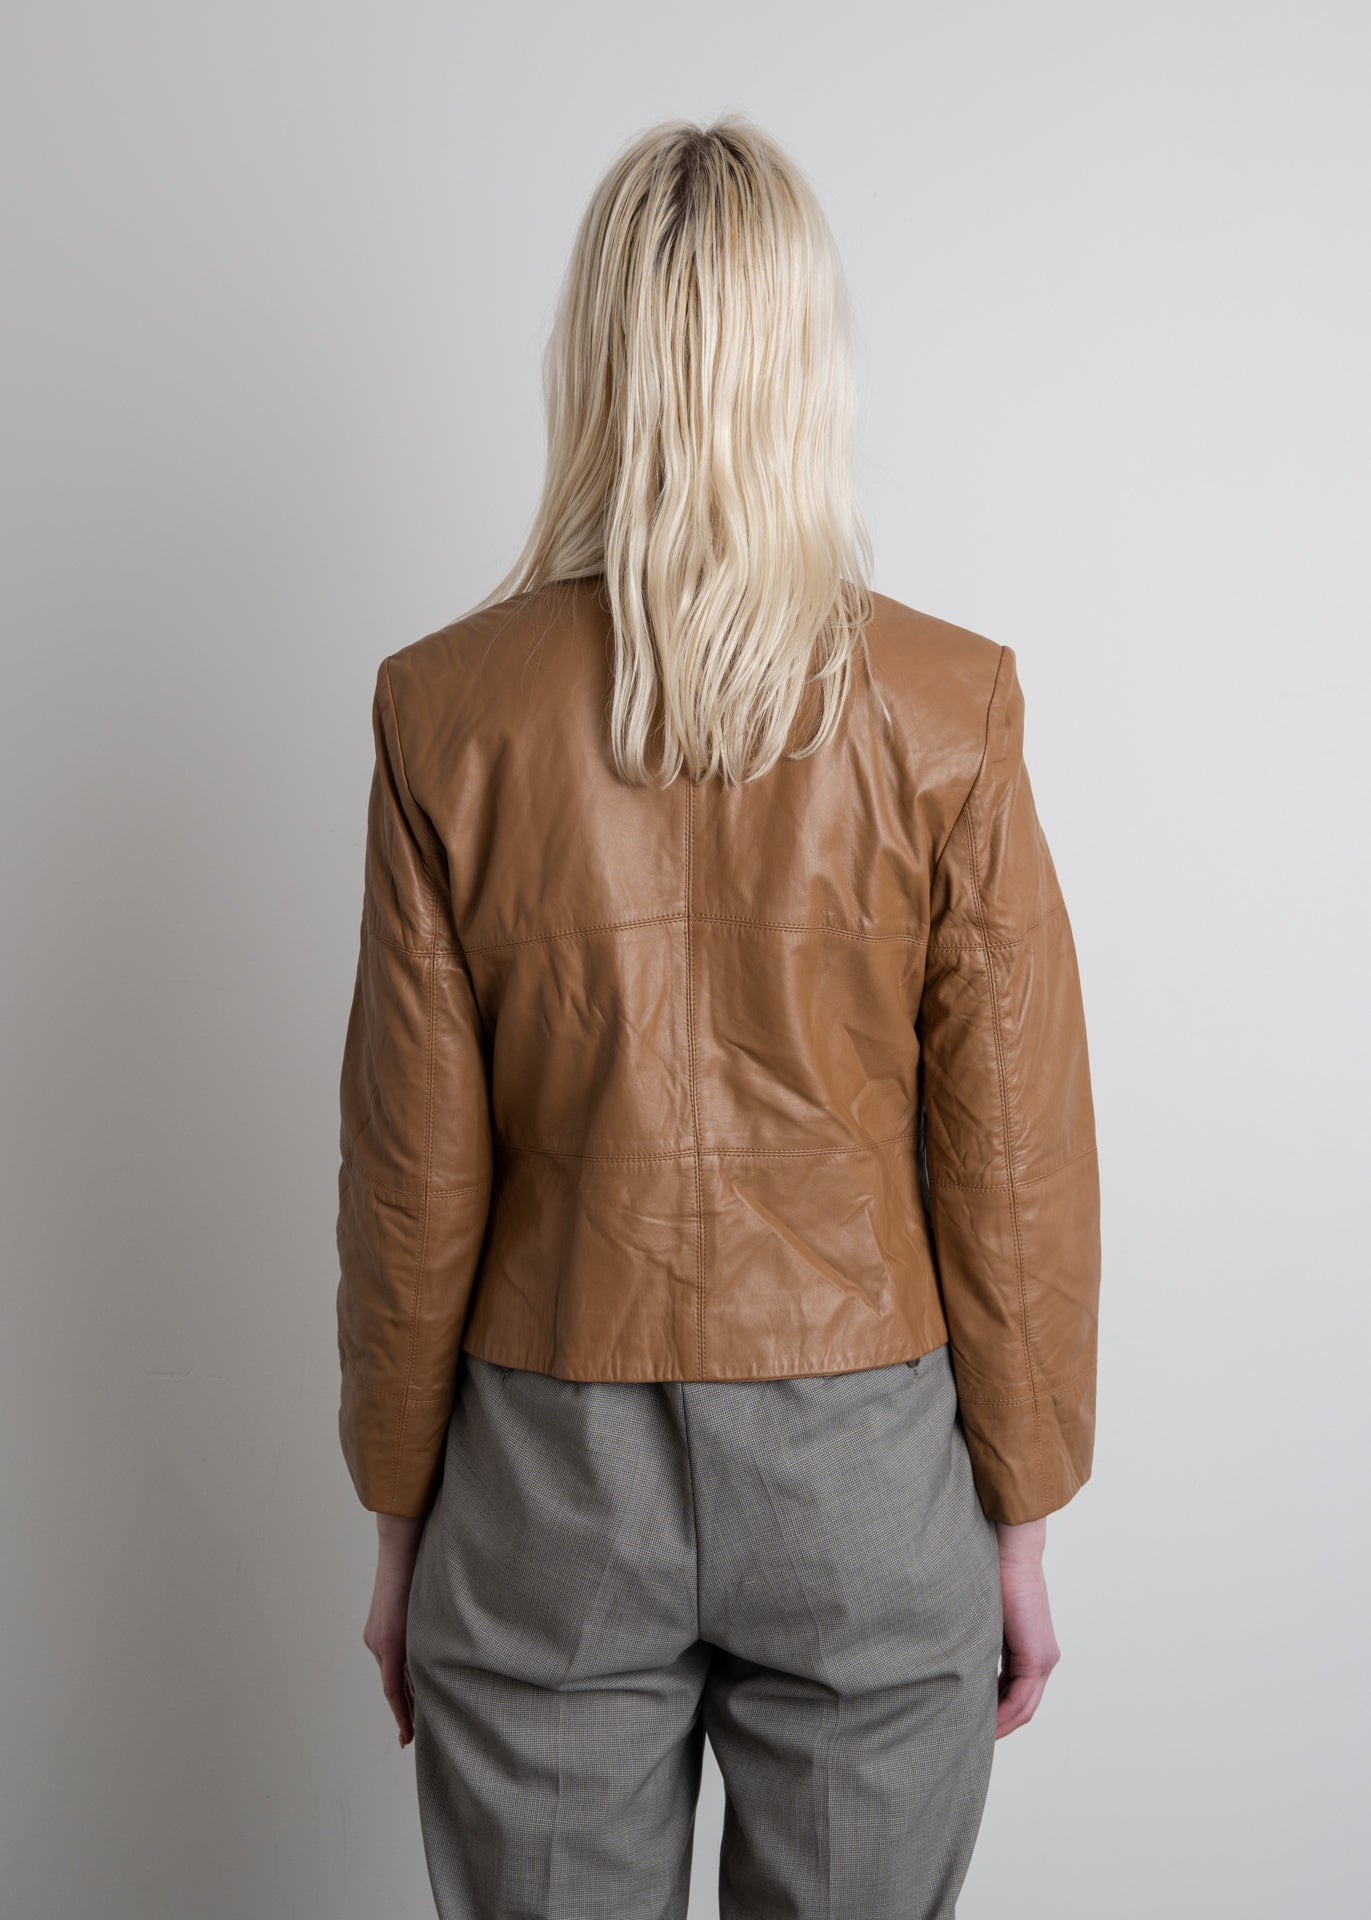 Vintage Brown Leather Jacket